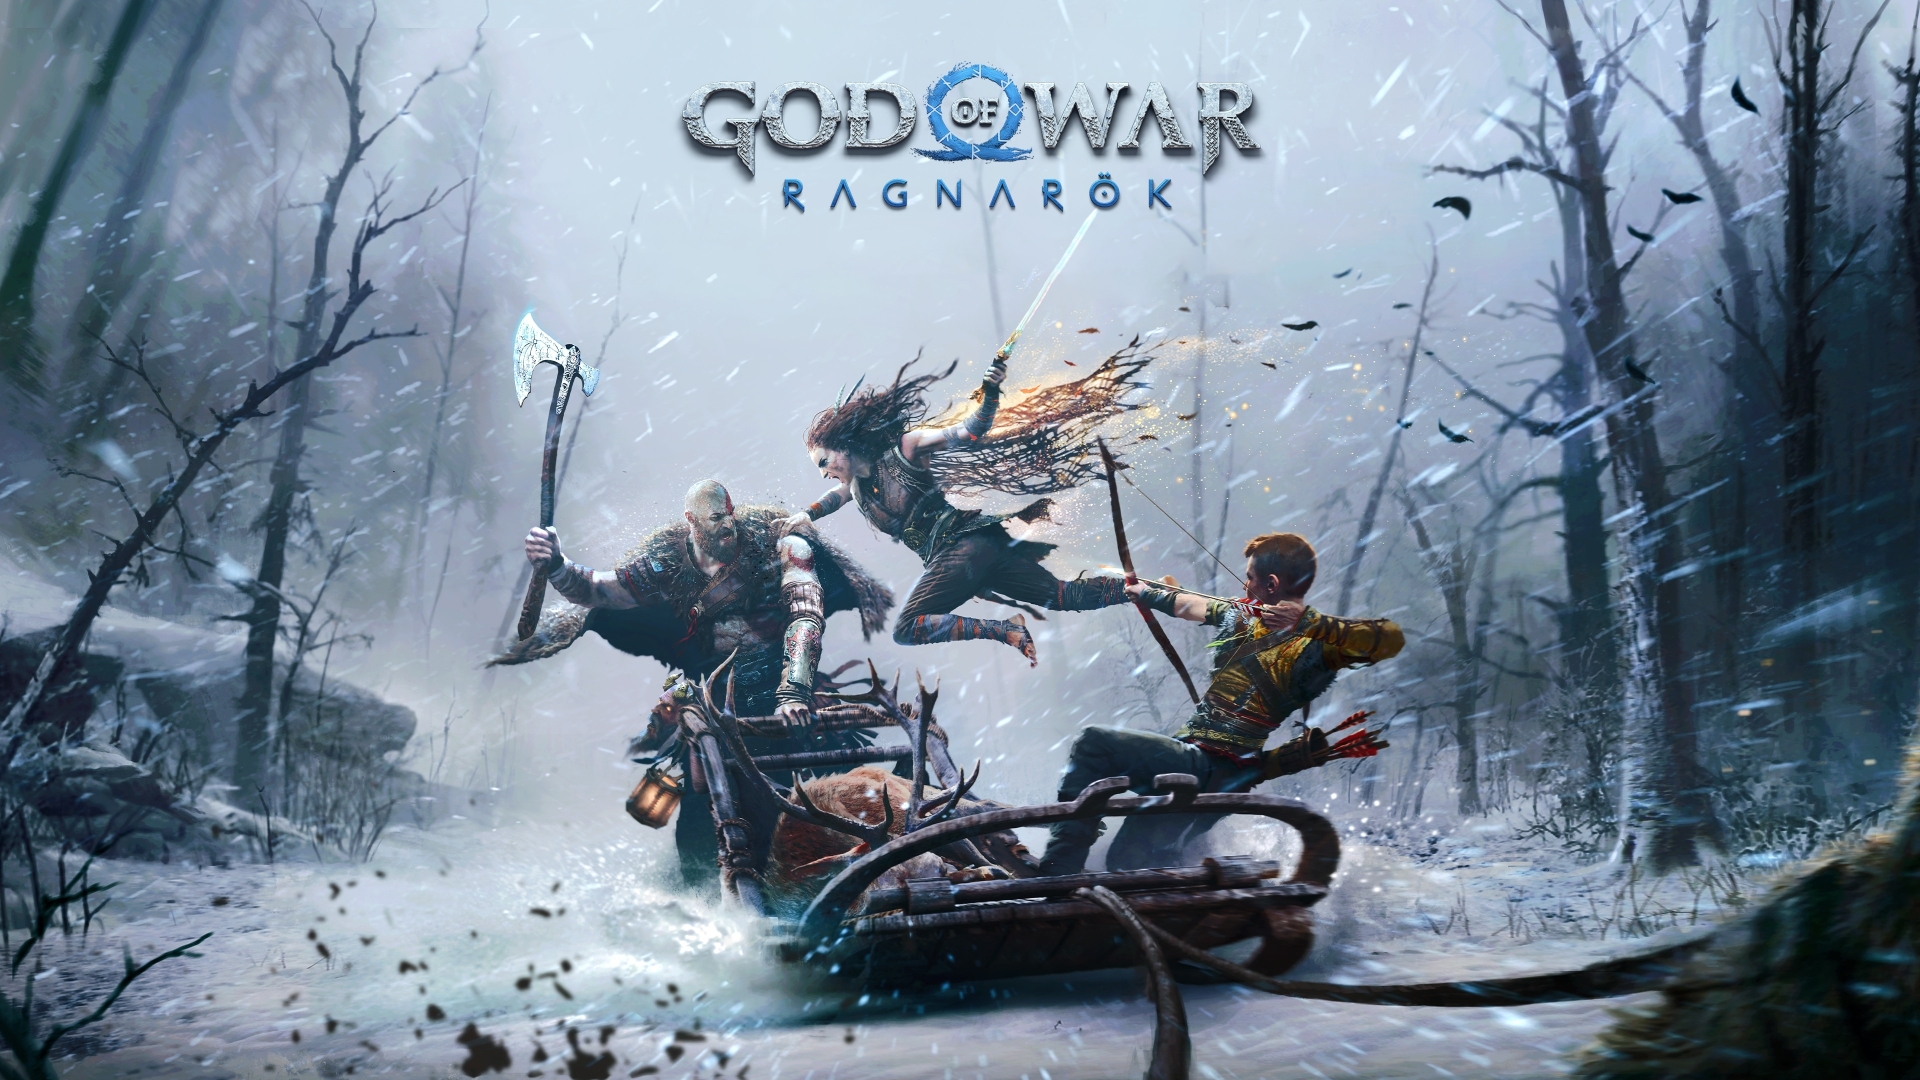 god of war ragnarök reddit download